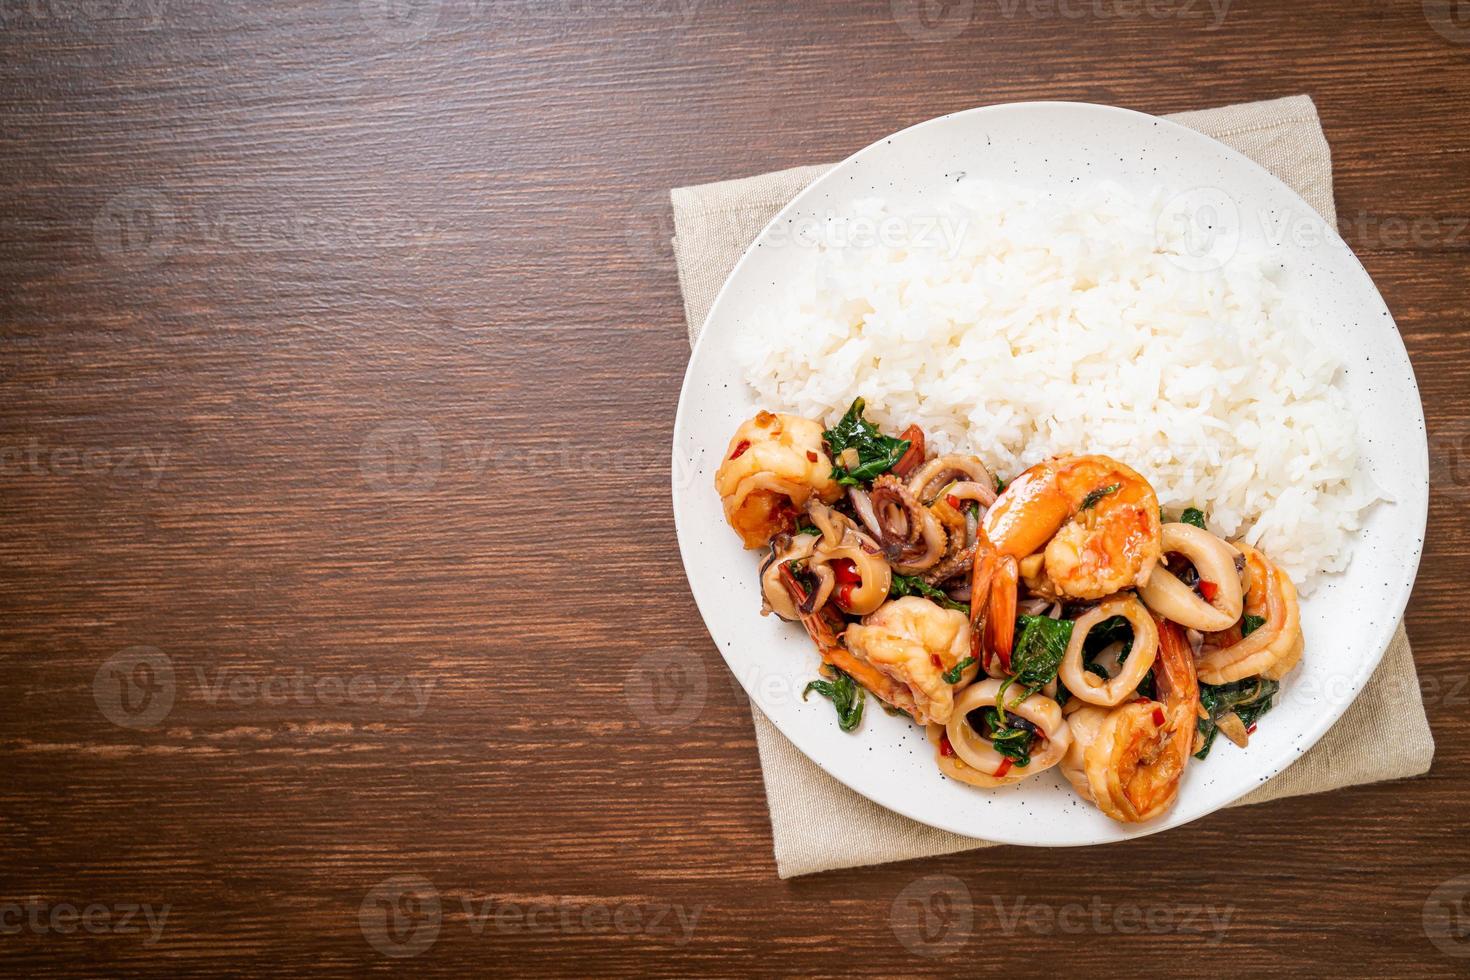 riso e frutti di mare saltati in padella di gamberi e calamari con basilico thai - stile asiatico foto